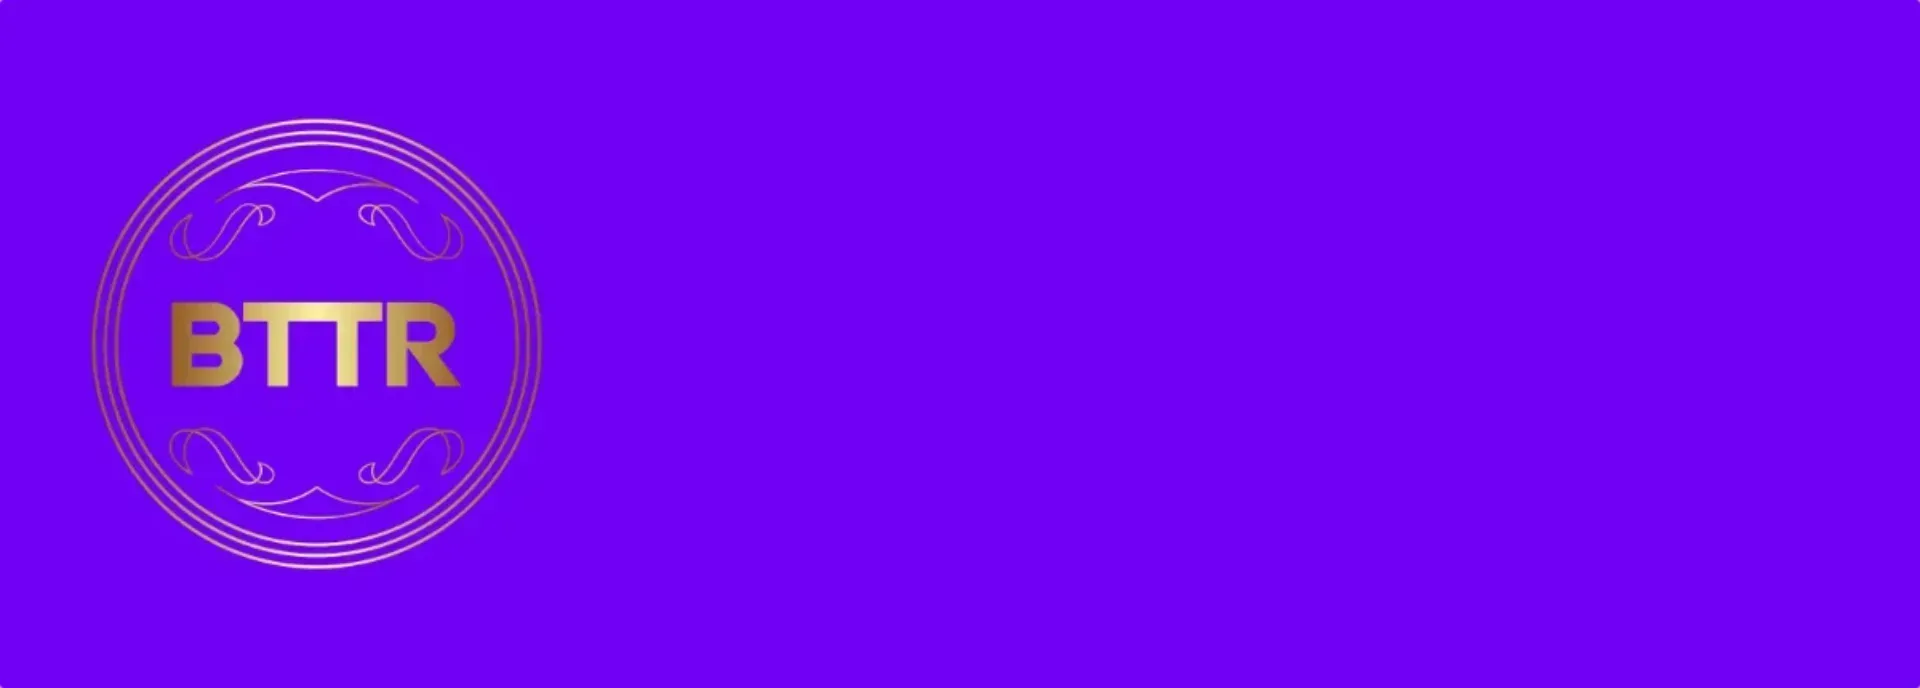 BTTR logo on a purple background